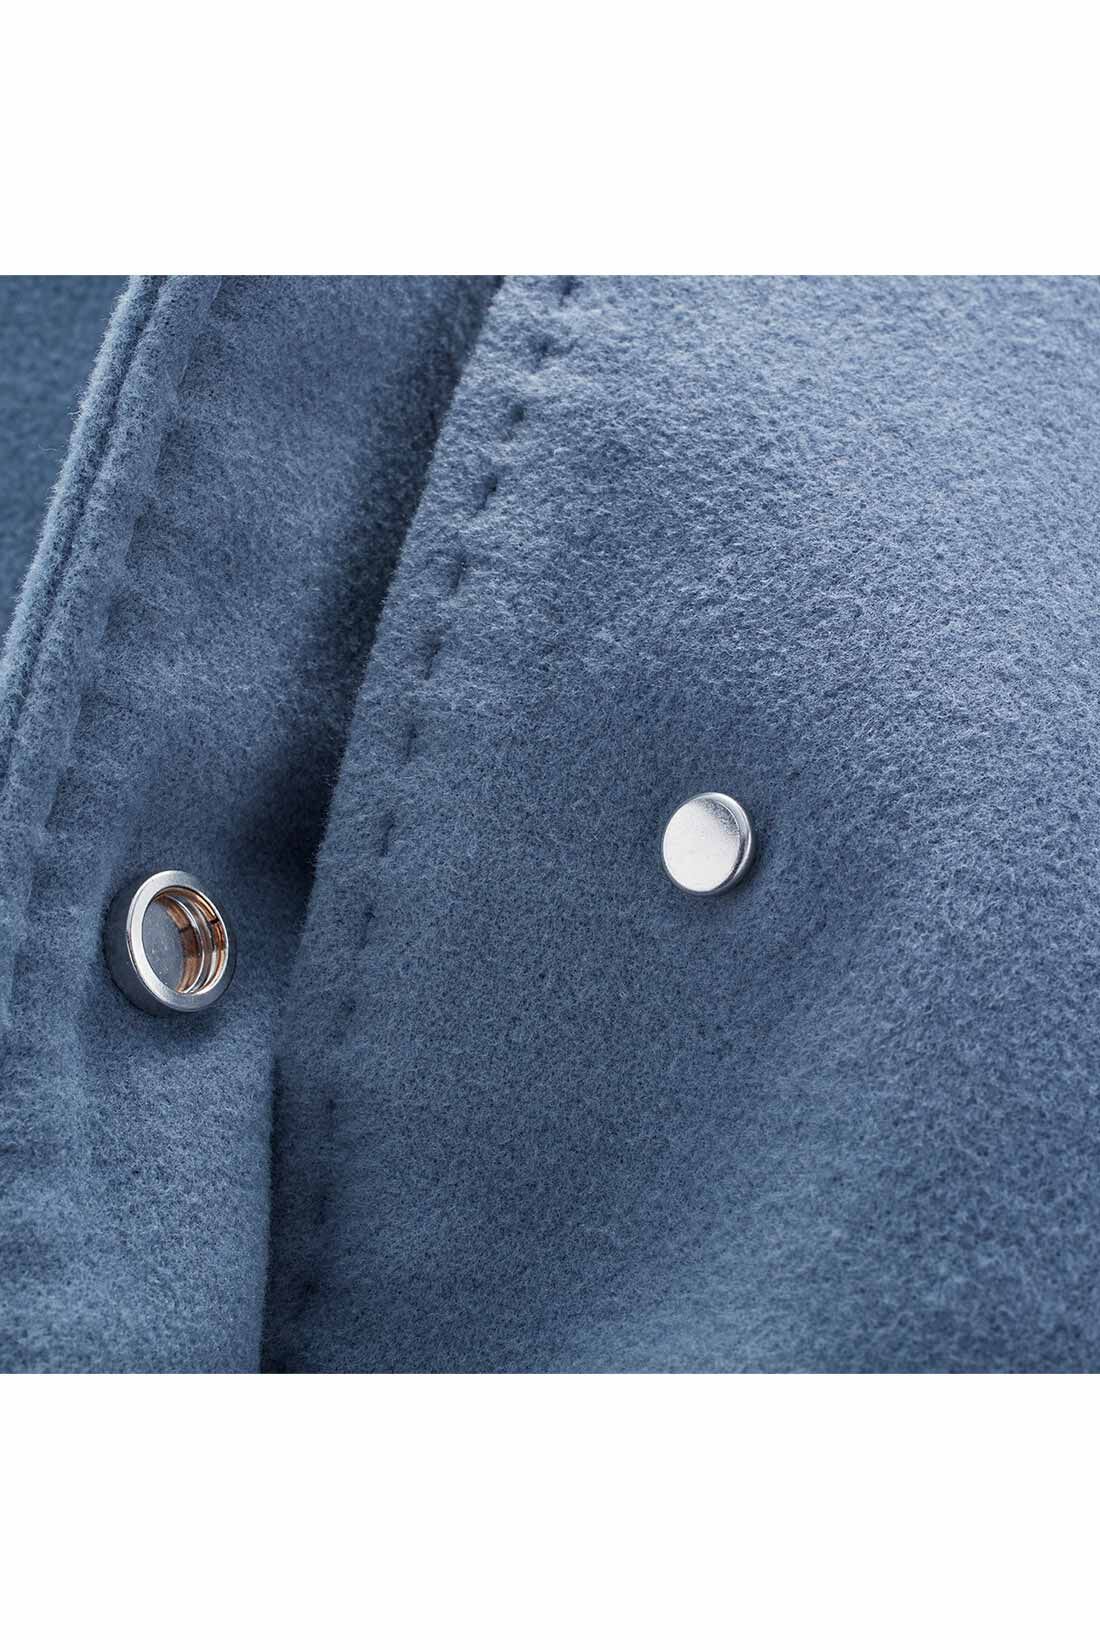 Live in  comfort|リブ イン コンフォート　くぼっち★とコラボ　フードが取り外せて着こなし広がる くすみブルーのベーシックコート|新鮮で品よく着やすいくすみブルー。袖口やすそなどに飾りステッチ、フロントのスナップボタンにも特徴があり、開けても閉じても好印象。